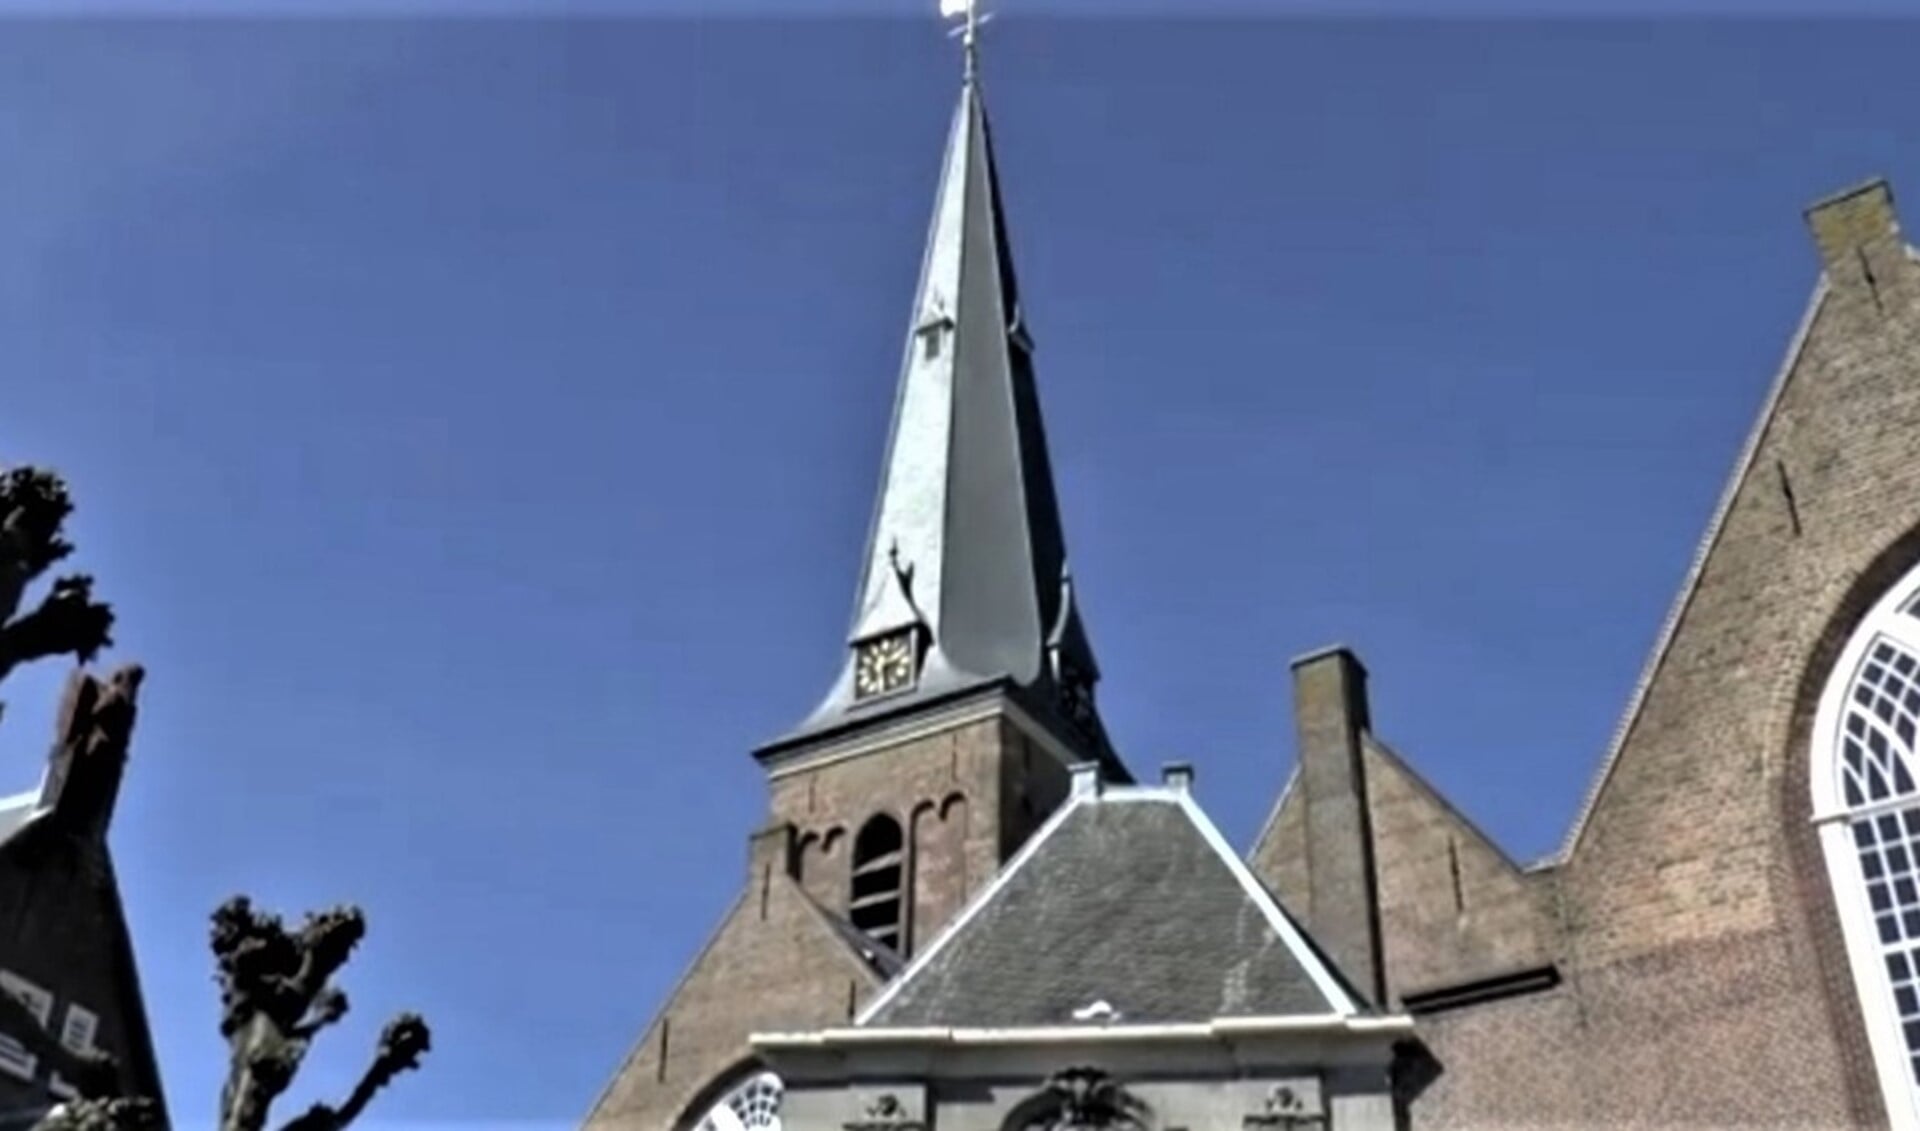 De toren van de Ouder Kerk van waaruit het carillon klinkt.